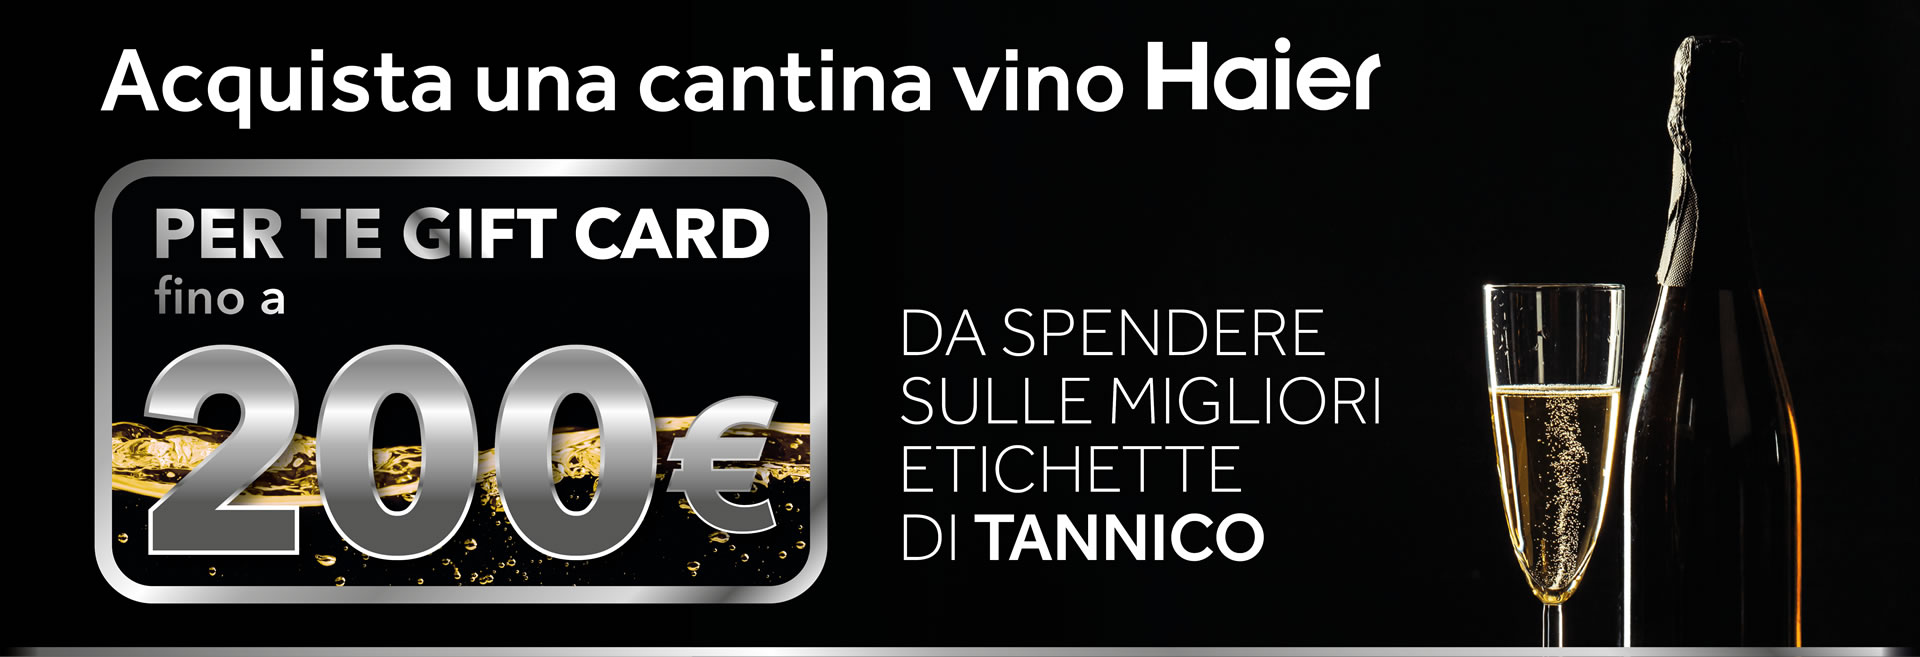 Acquista una cantina vino Haier, per te una gift card fino a 200 € da spendere sulle migliori etichette di Tannico